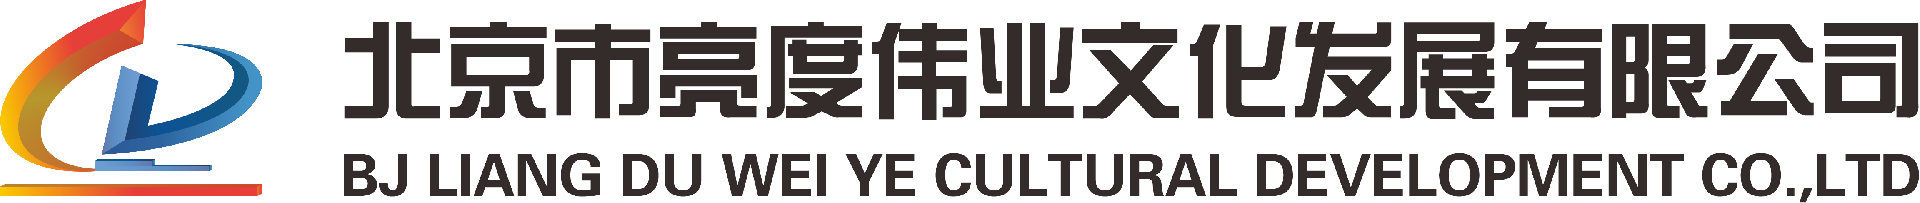 北京市亮度伟业文化发展有限公司-北京市亮度伟业文化发展有限公司